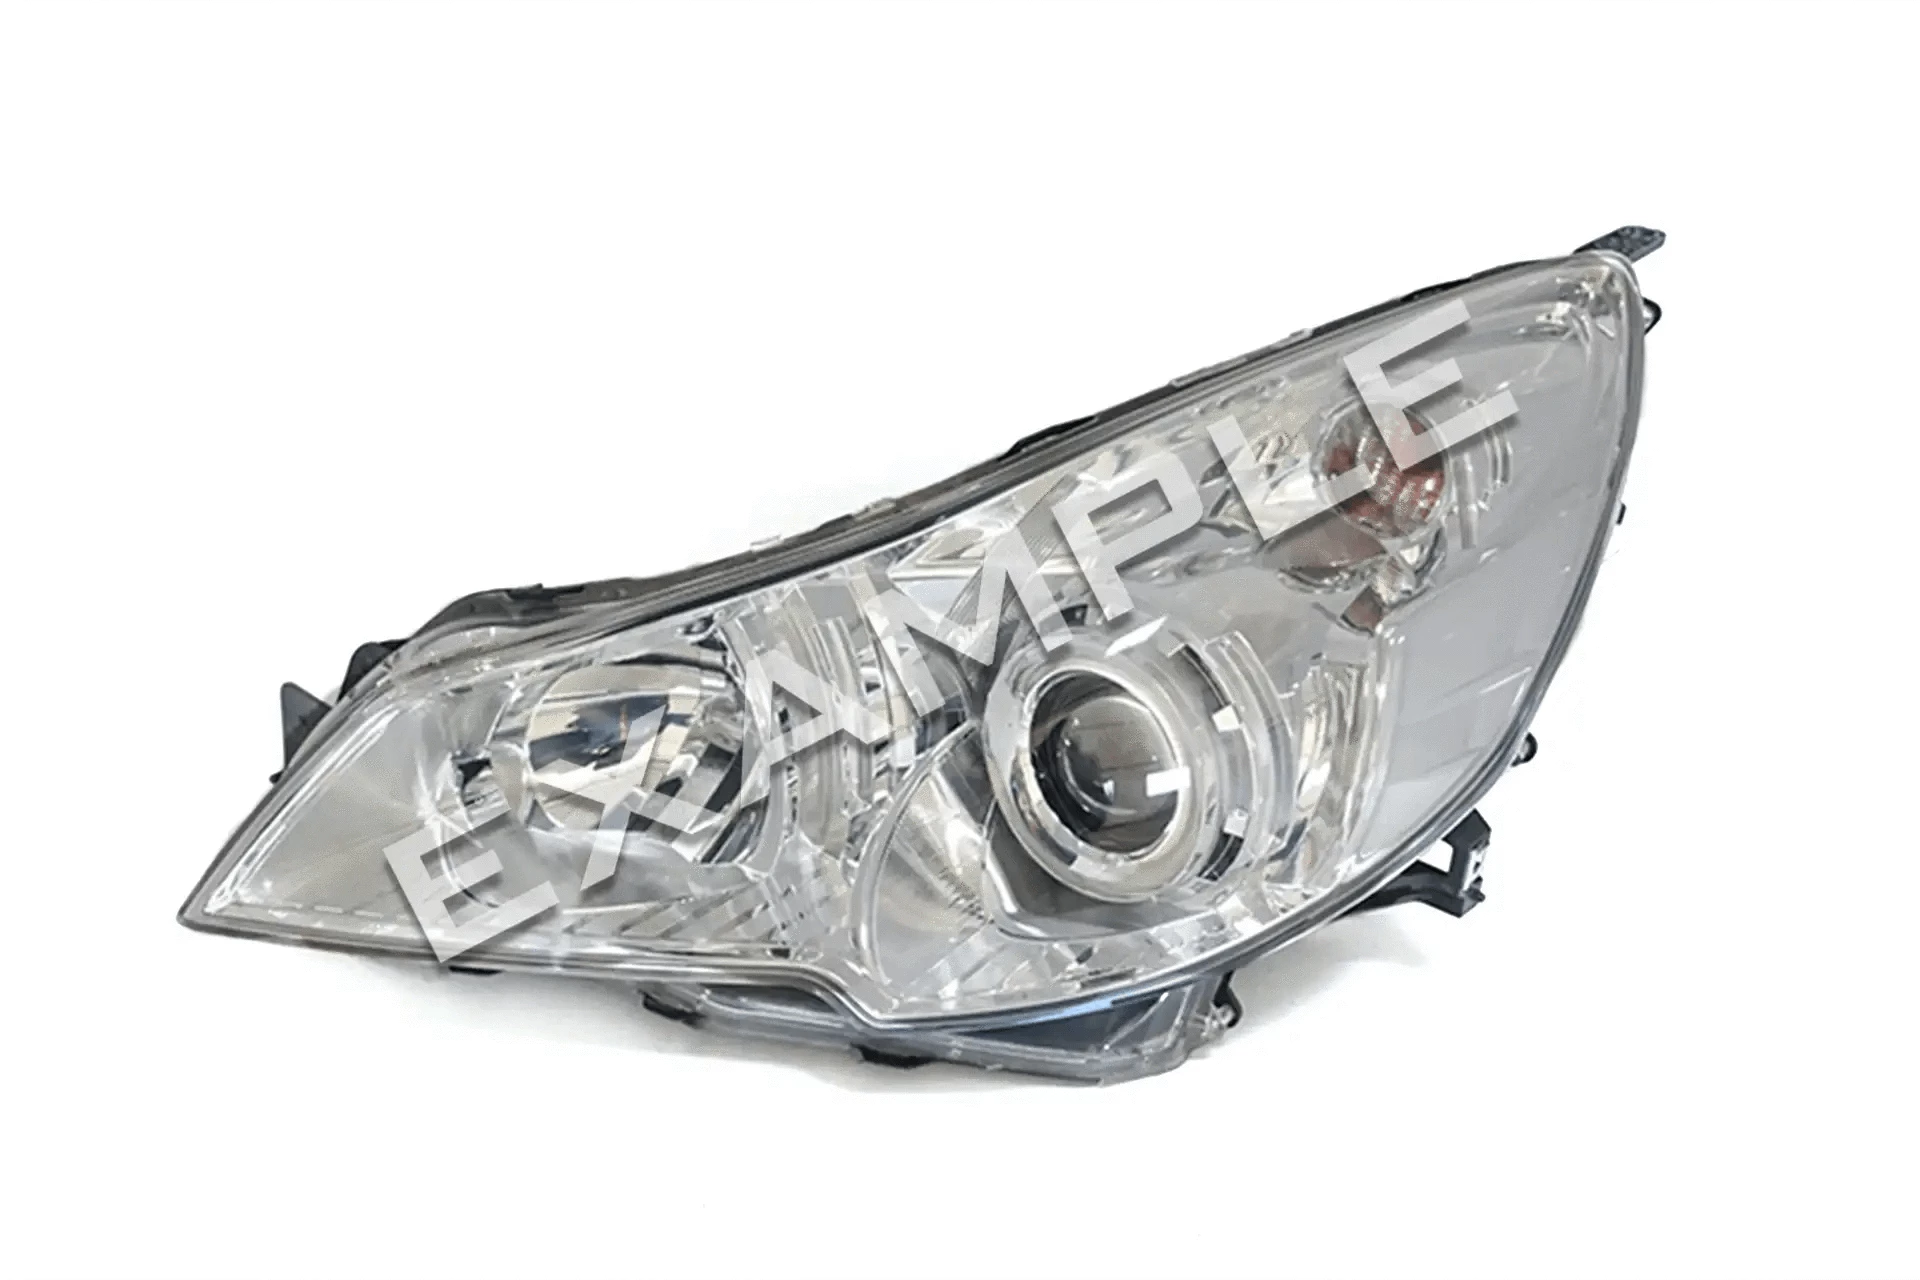 Subaru Legacy / Outback 09-14 Kit de réparation et de mise à niveau des phares bi-xénon pour phares au xénon simples